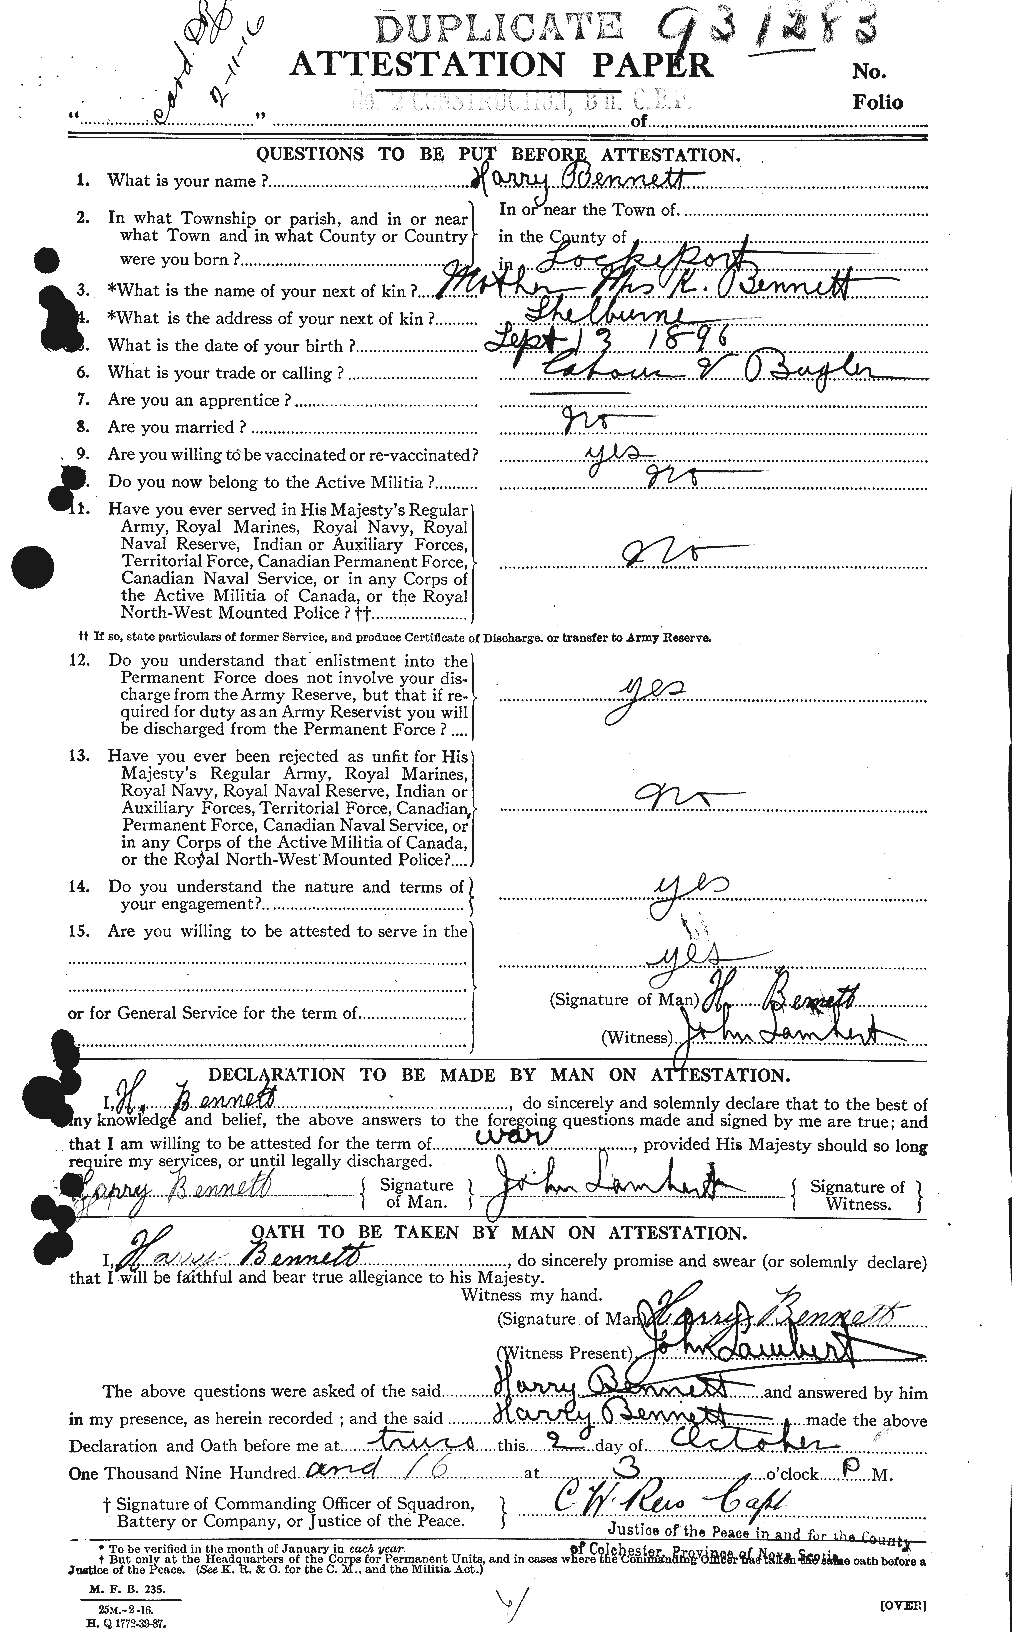 Dossiers du Personnel de la Première Guerre mondiale - CEC 238455a